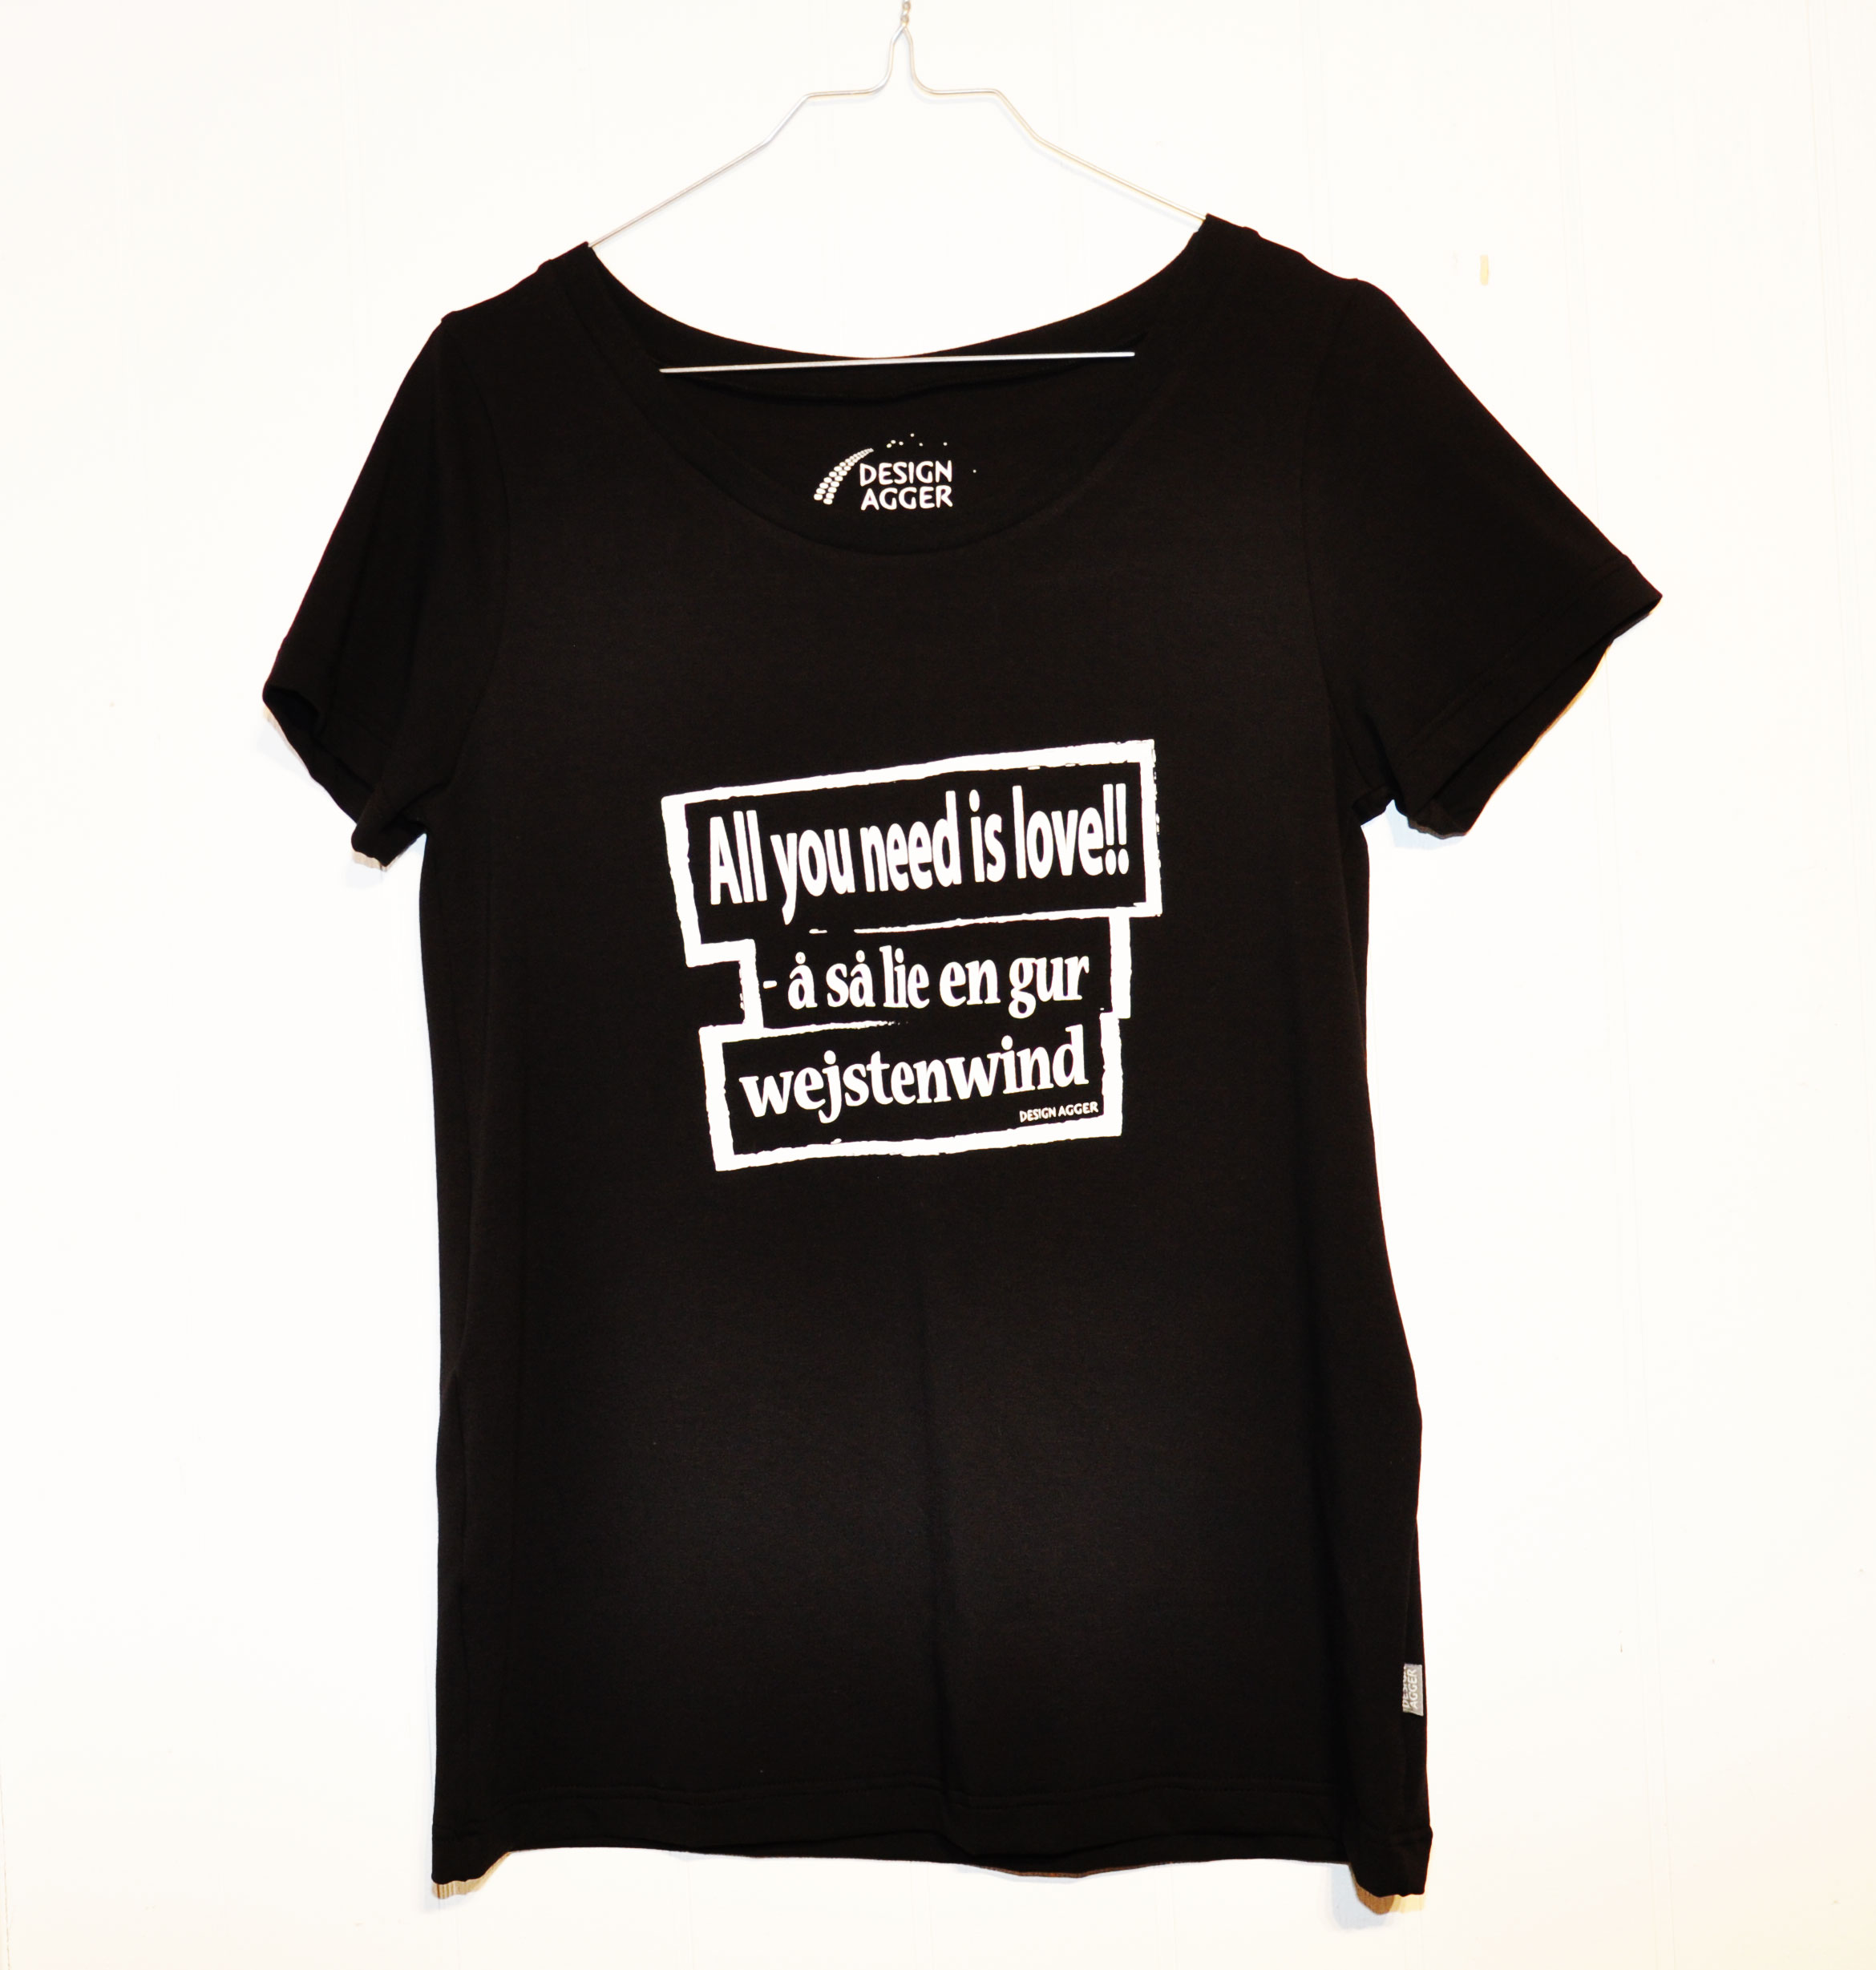 T-shirt - sort - Design agger - bæredygtig produktion i